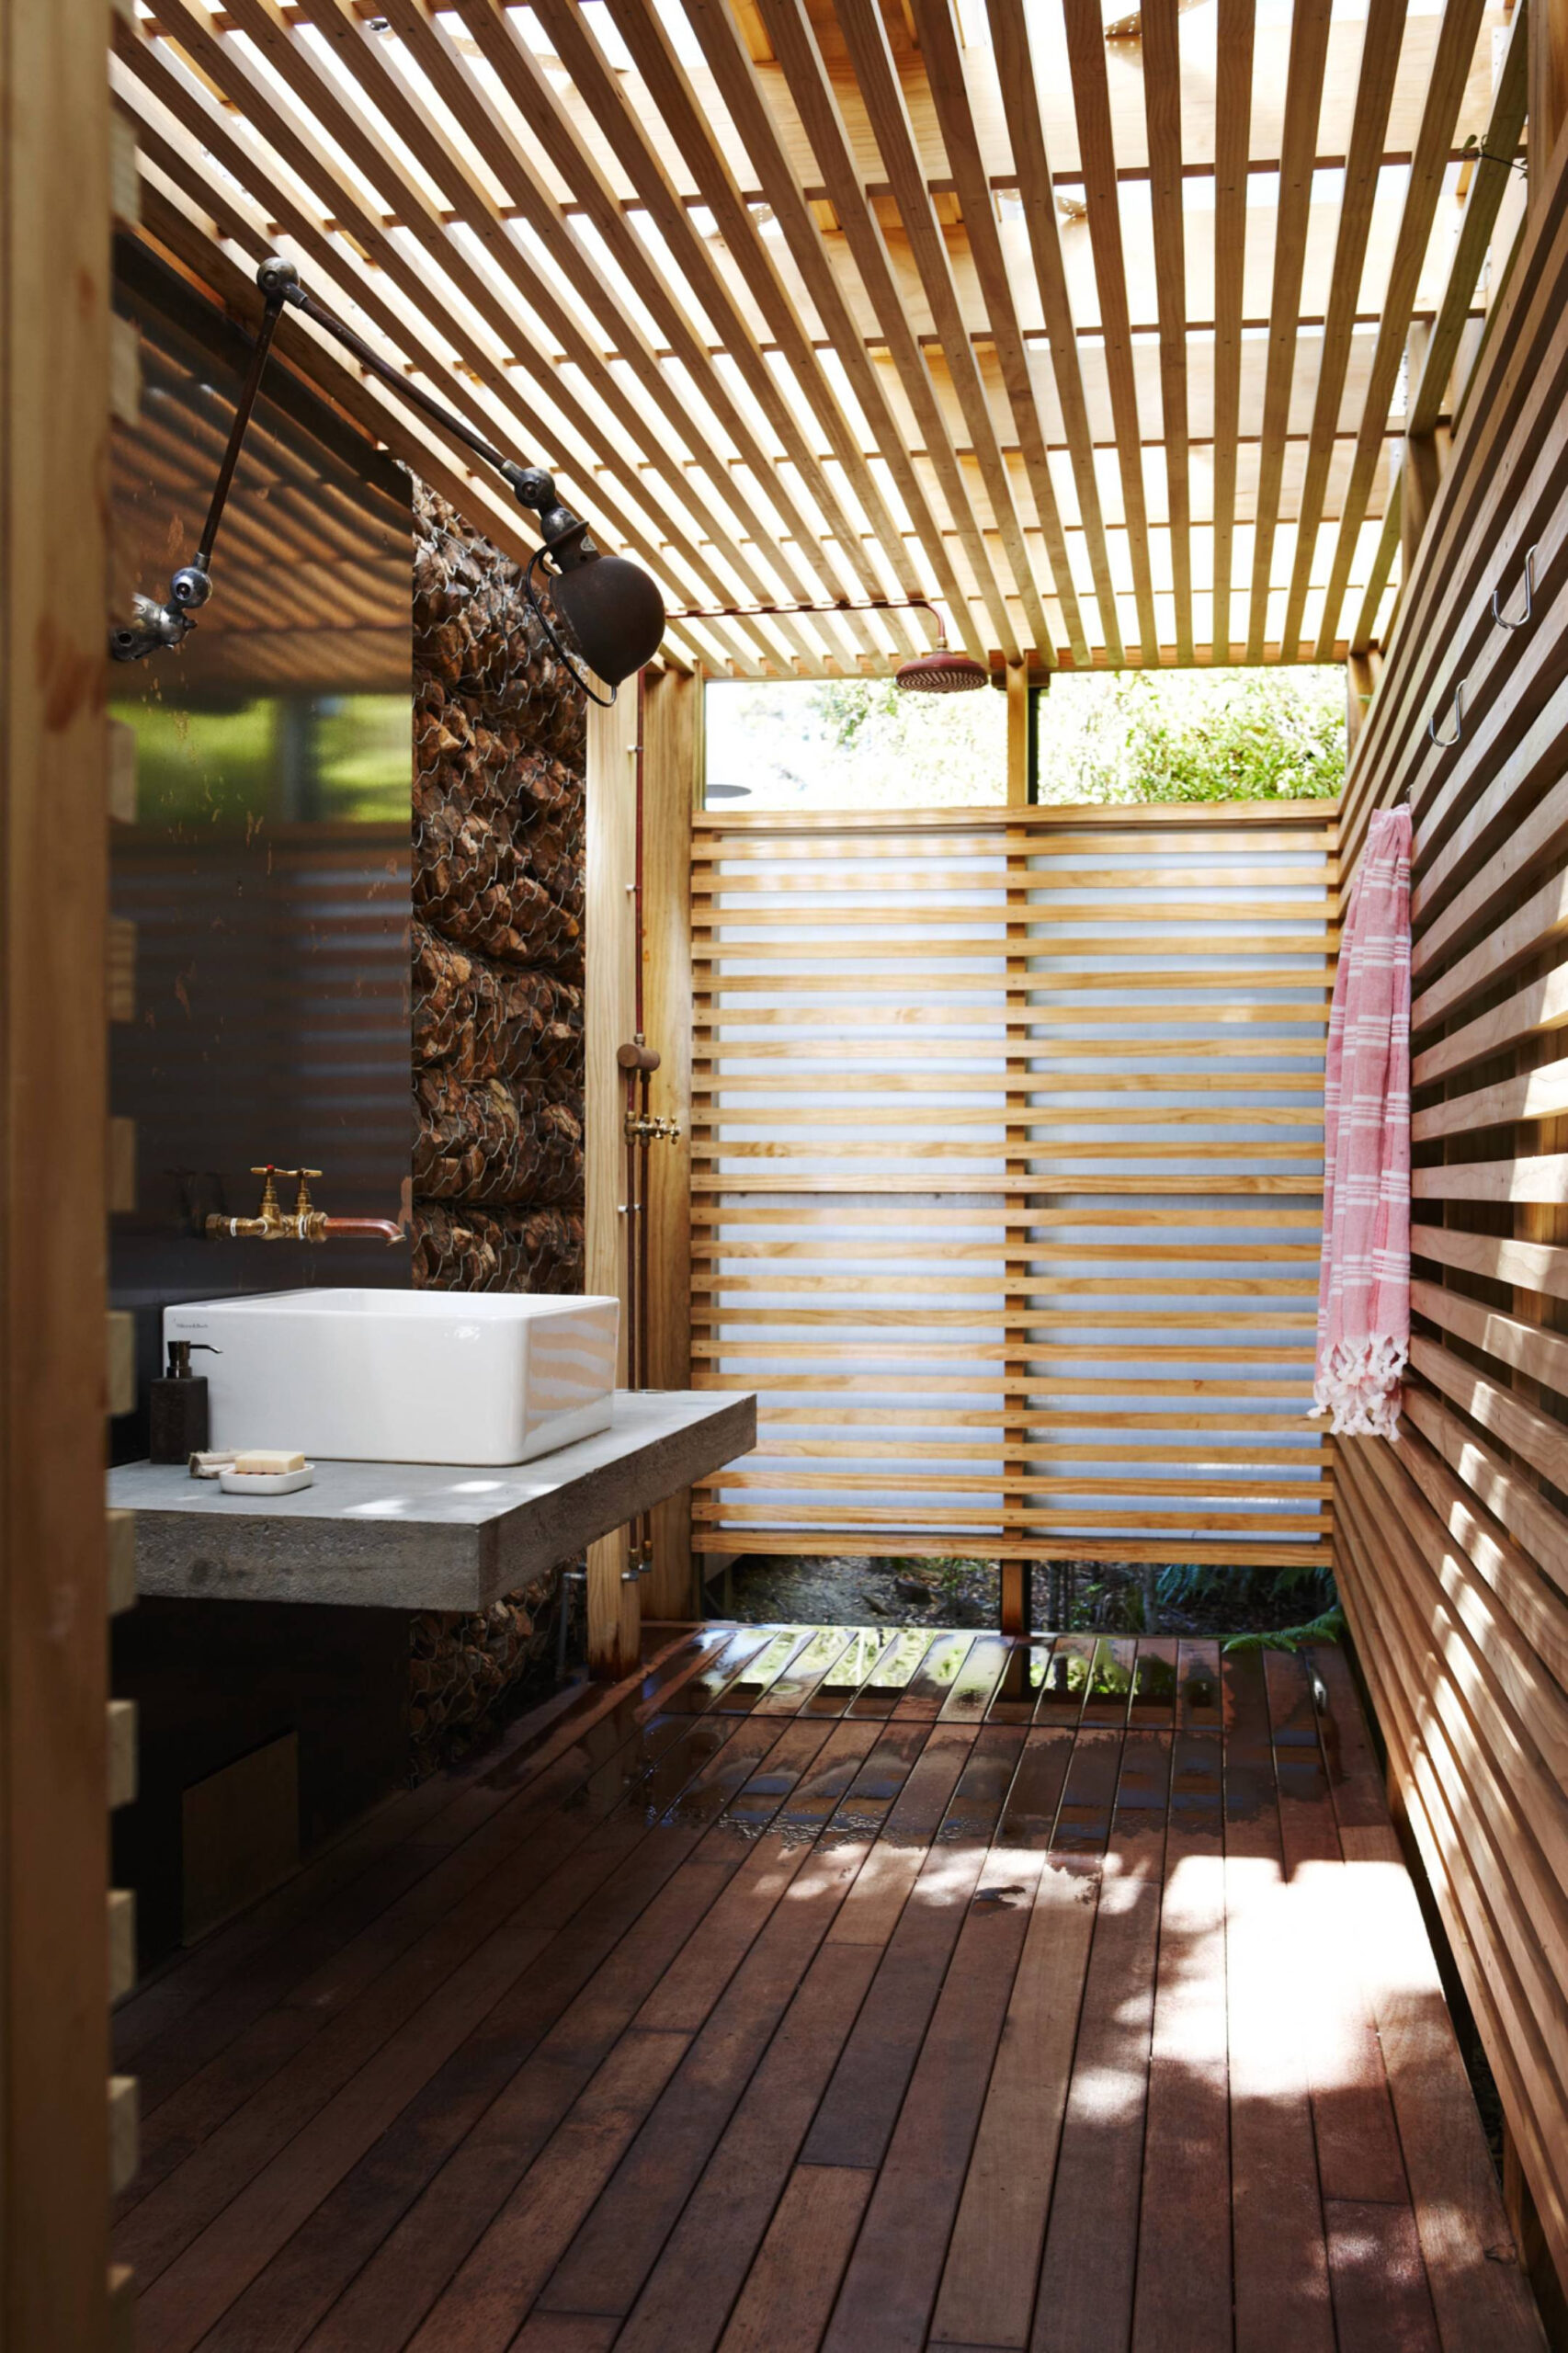 referensi desain kamar mandi semi outdoor cantik dan asri ...